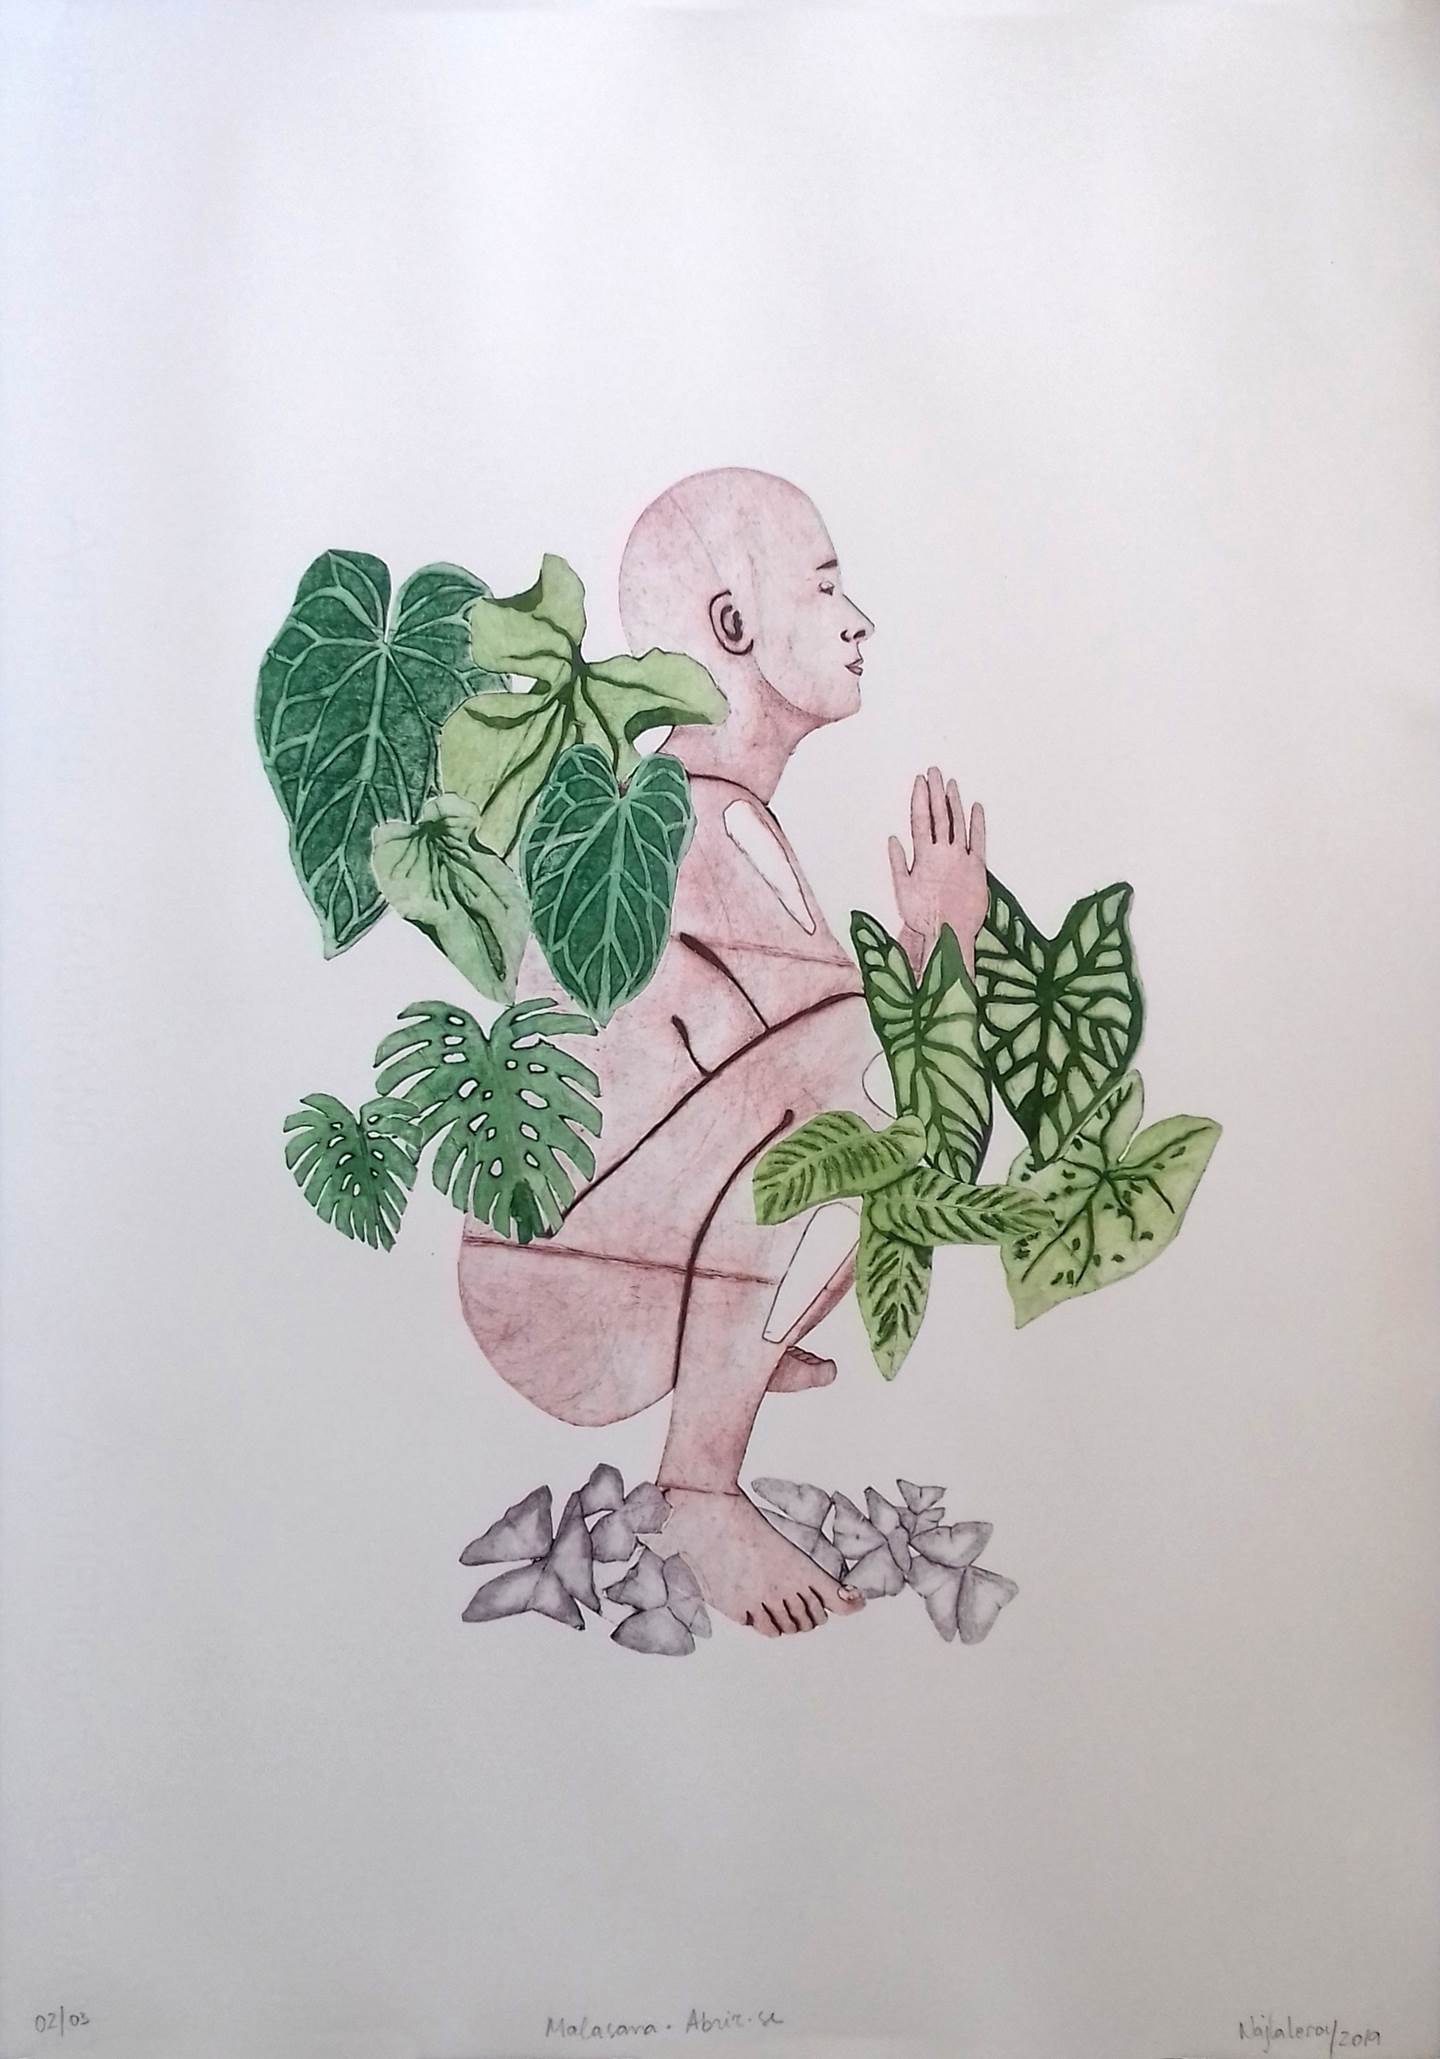 Malasana - Abrir-se, original Figura humana Grabado Dibujo e Ilustración de Najla Leroy